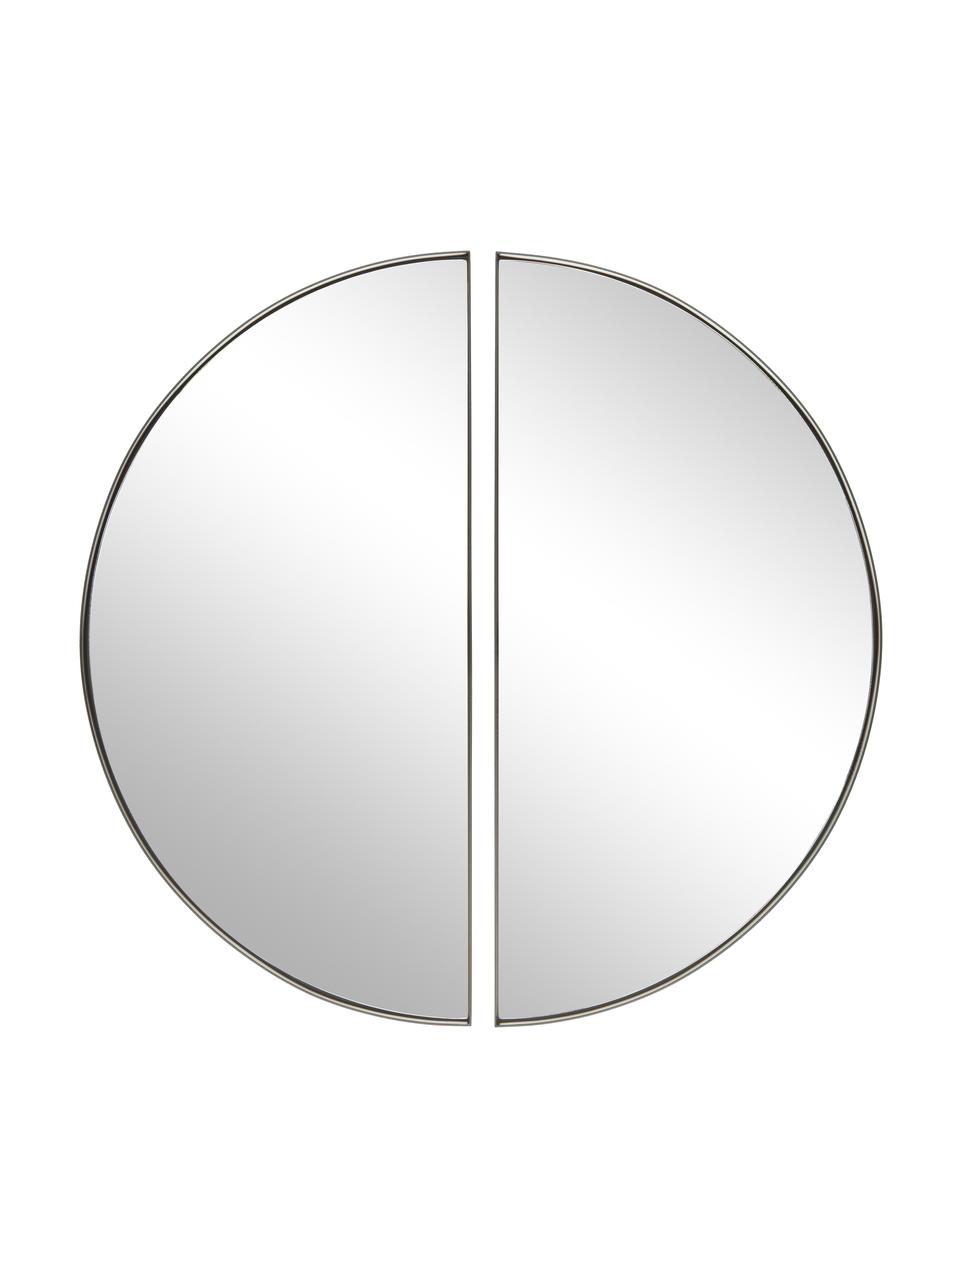 Nástěnné zrcadlo Selena, 2 ks, Černá, Ø 72 cm